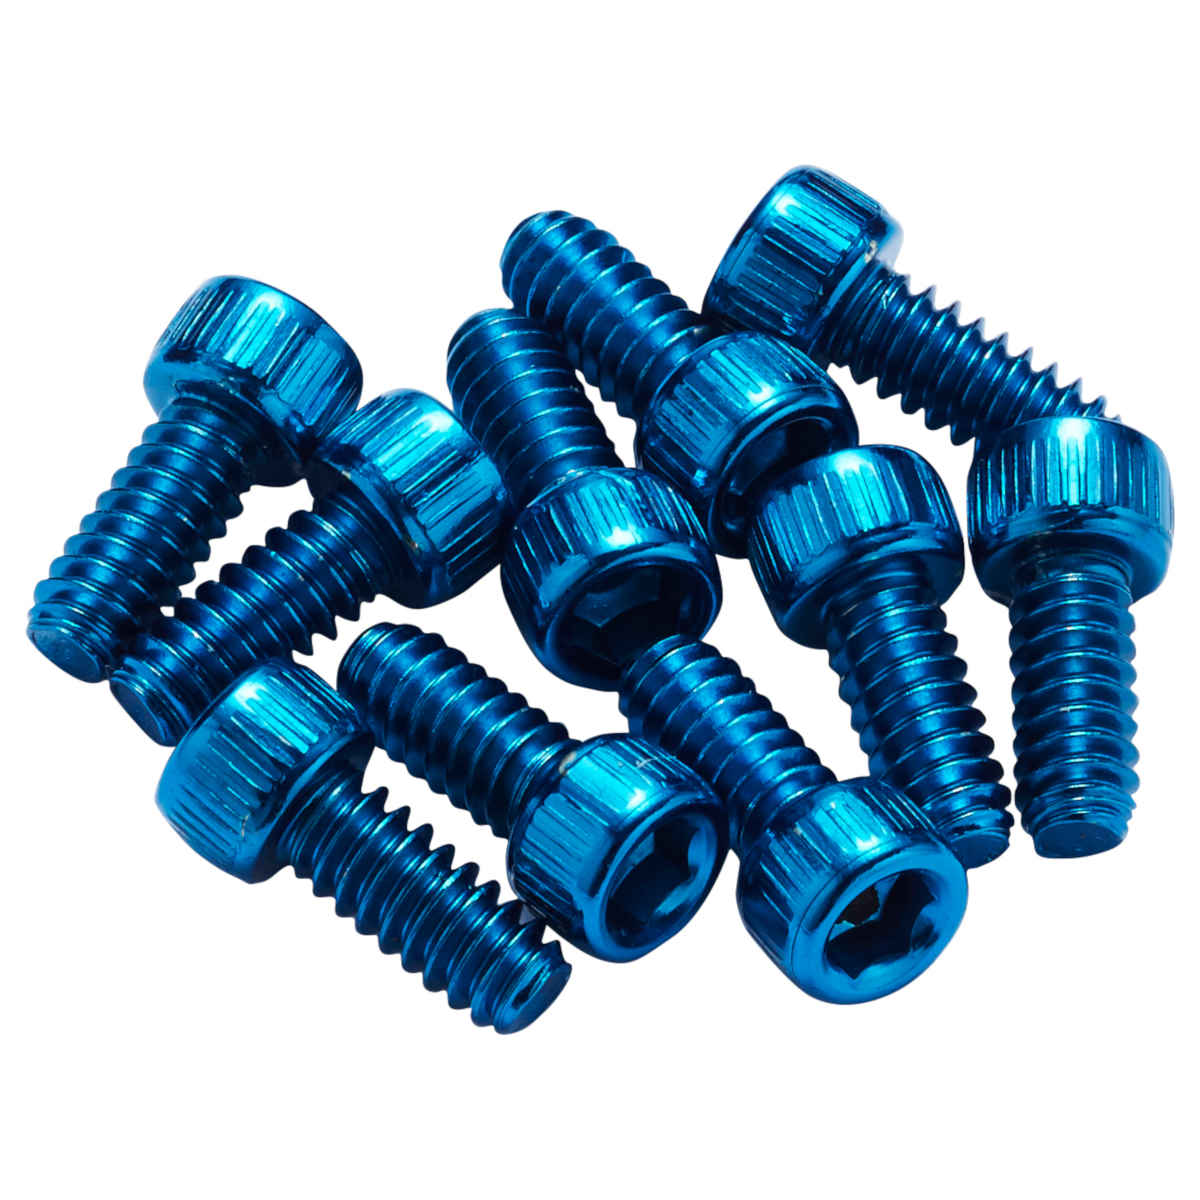 Foto de Reverse Components Acero Pins para Escape Pro &amp; Black ONE Pedales - azul